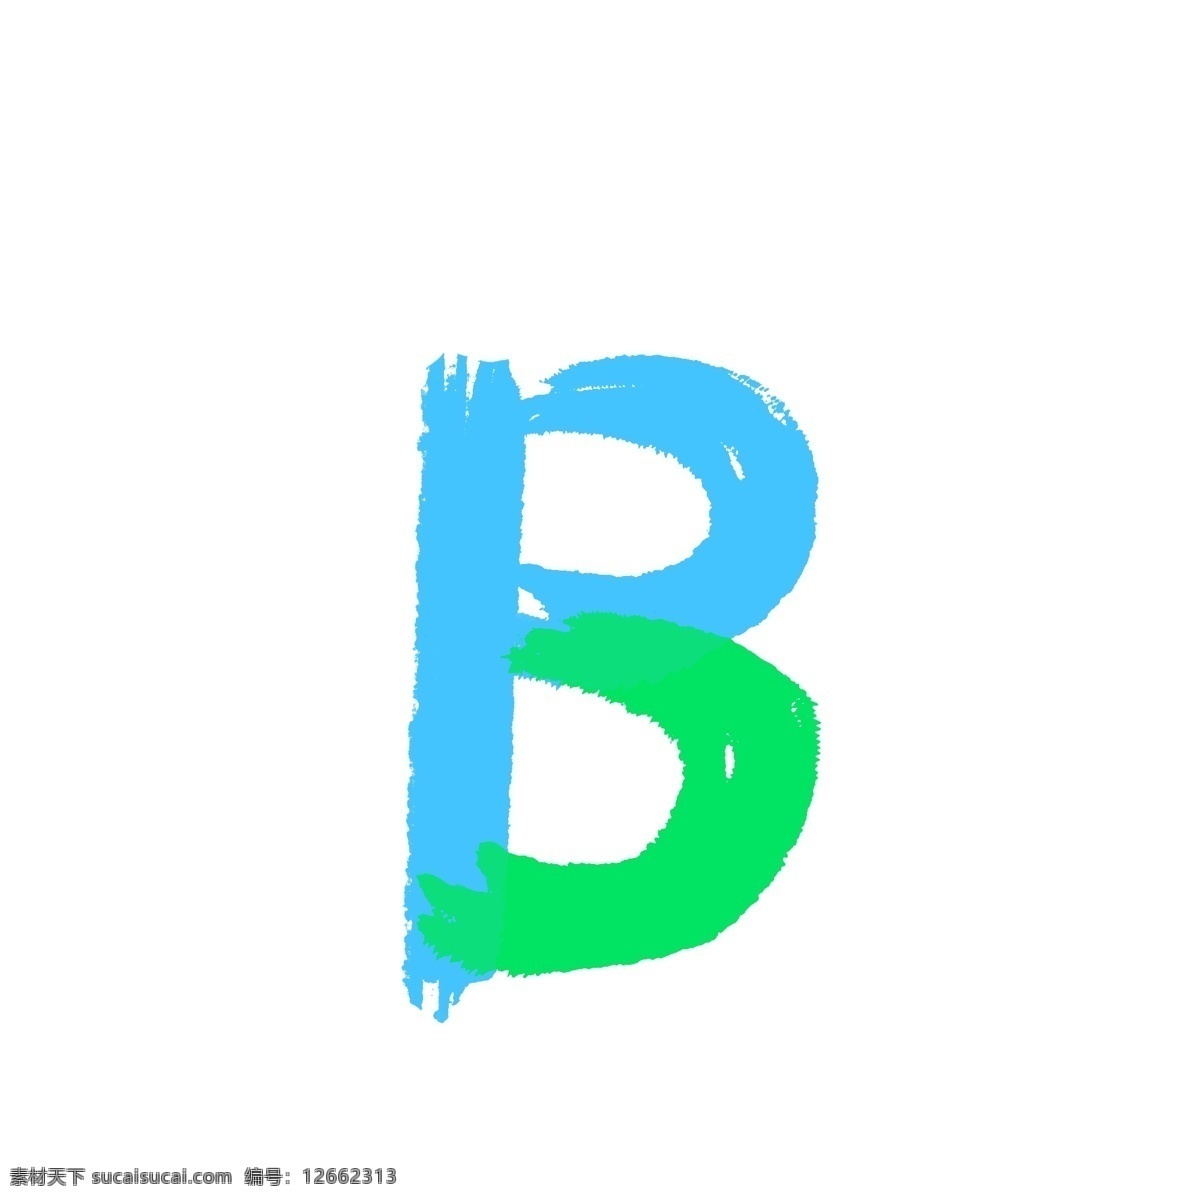 卡通 半 透明 喷溅 字母 b 免 抠 字母喷溅 喷溅字母 喷溅的效果 半透明效果 b字母